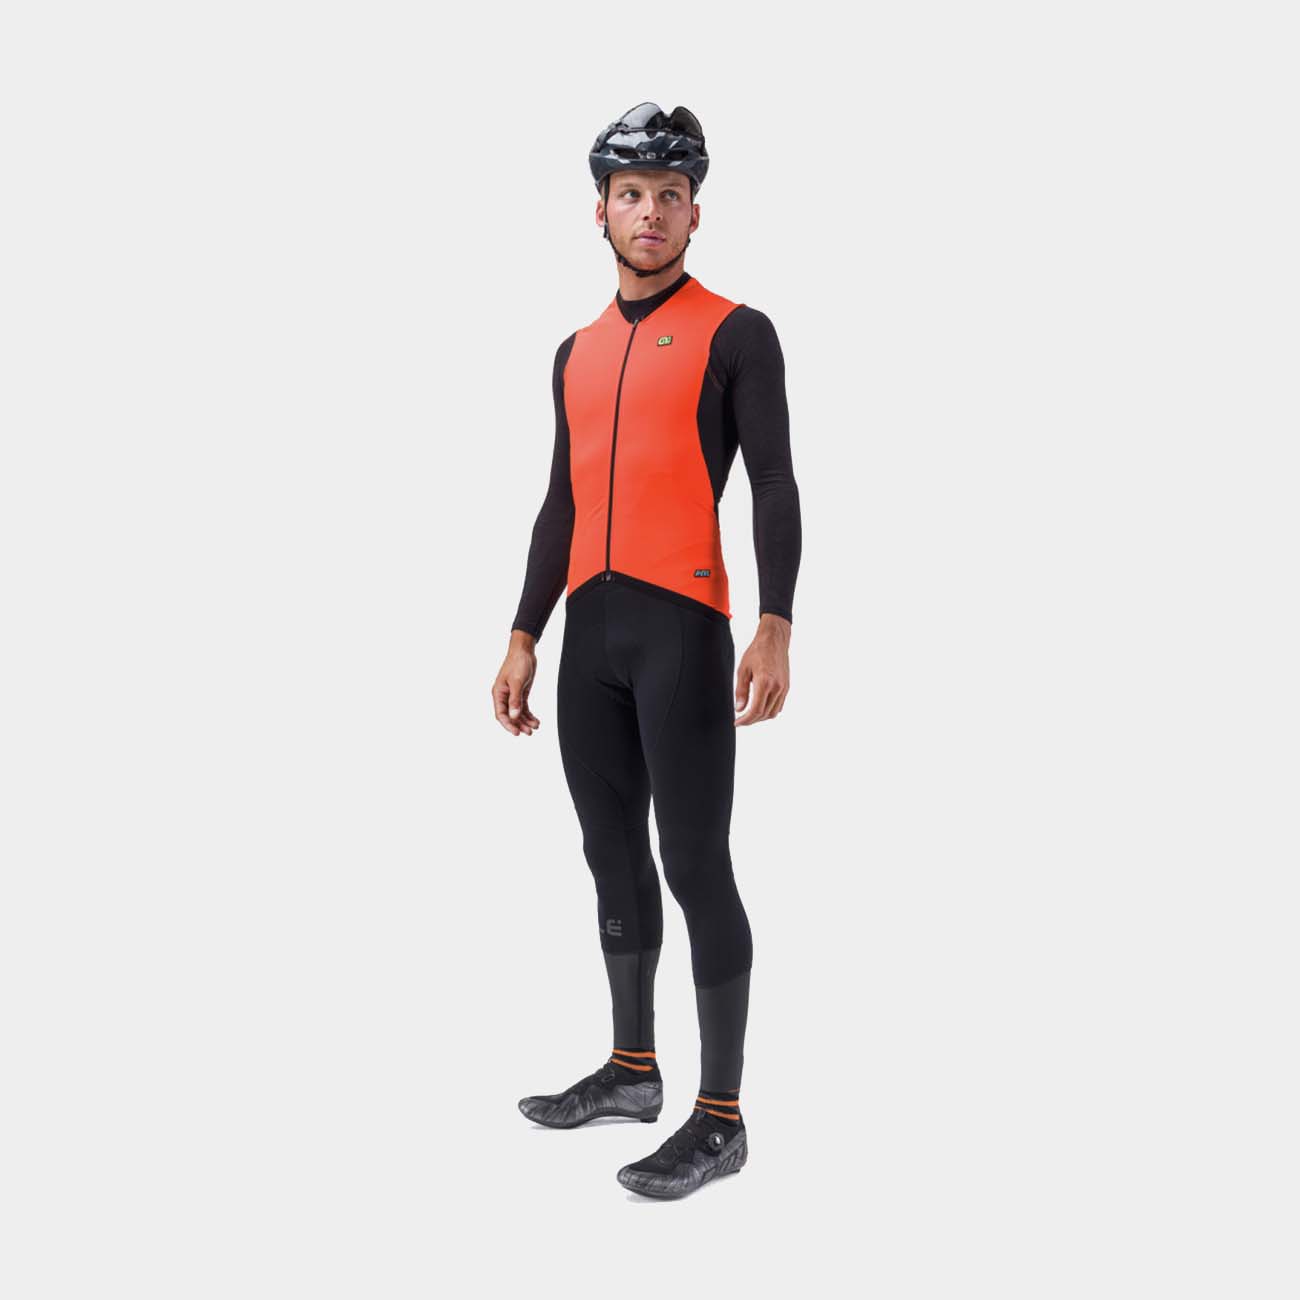 ALÉ Kerékpáros Mellény - CLIMA PROTECTION 2.0 - Narancssárga/fekete